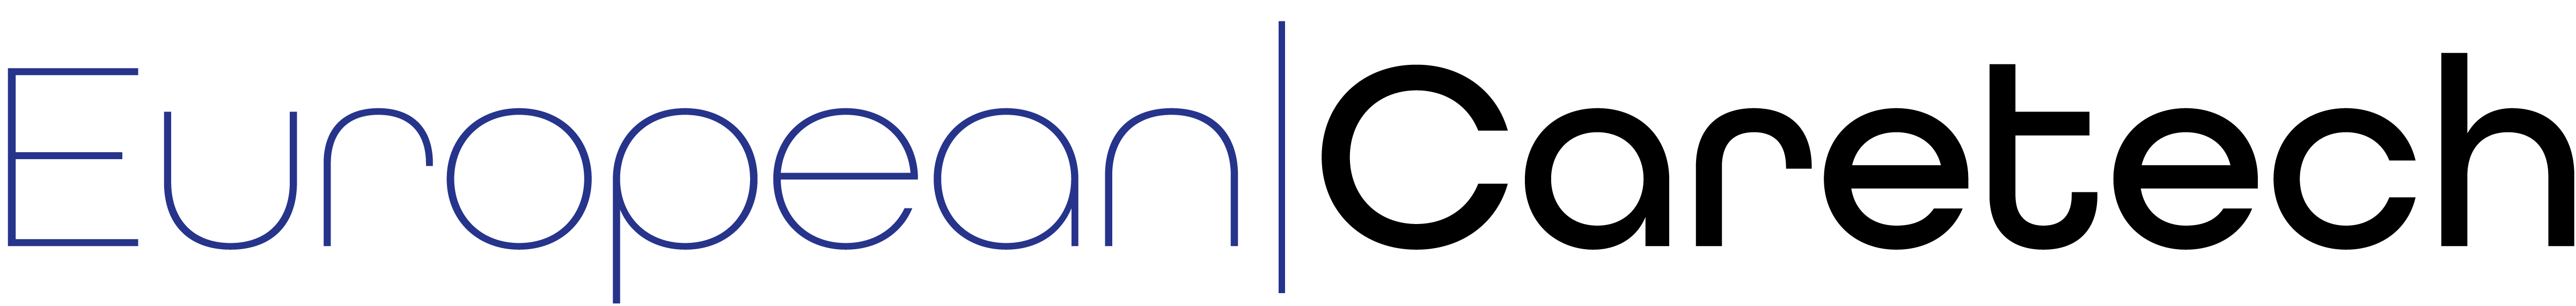 European Caretechs logo